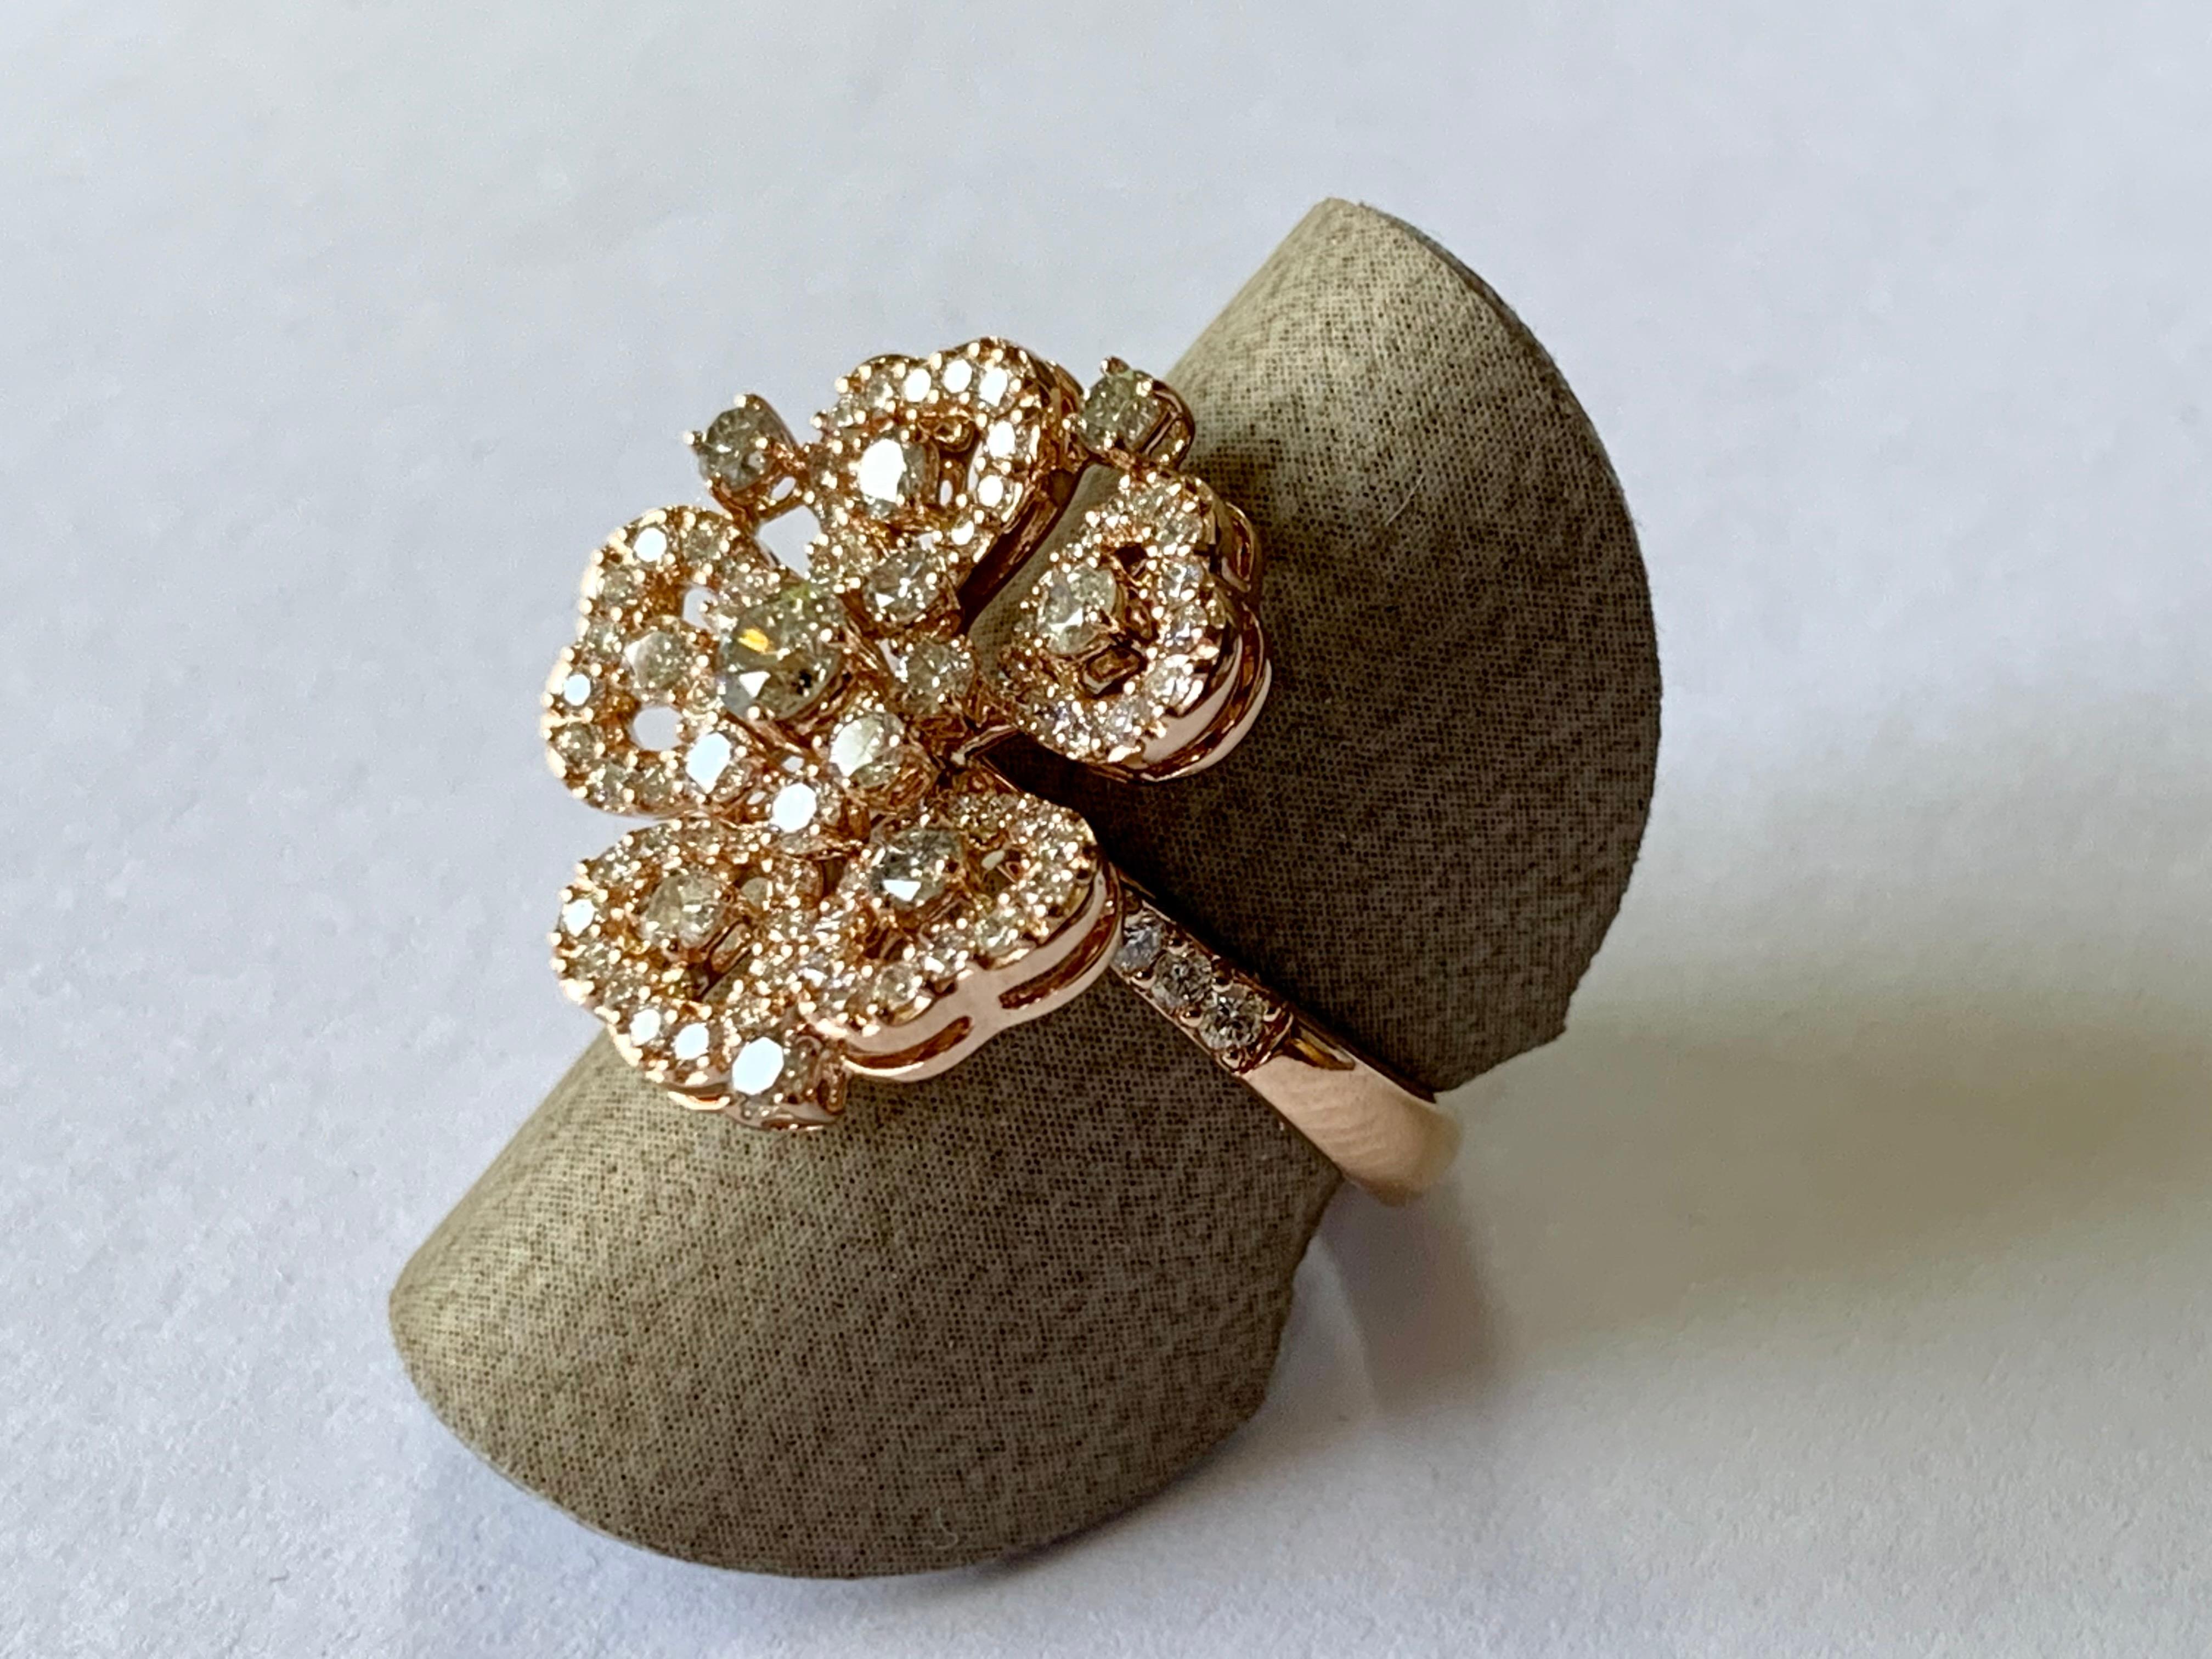 Bague fleur romantique en or rose 18 carats sertie de 95 diamants de couleur champagne et blancs taille brillant pesant 1,55 ct. Boucles d'oreilles et pendentifs assortis disponibles.
La bague est actuellement de taille 6.5 mais peut être